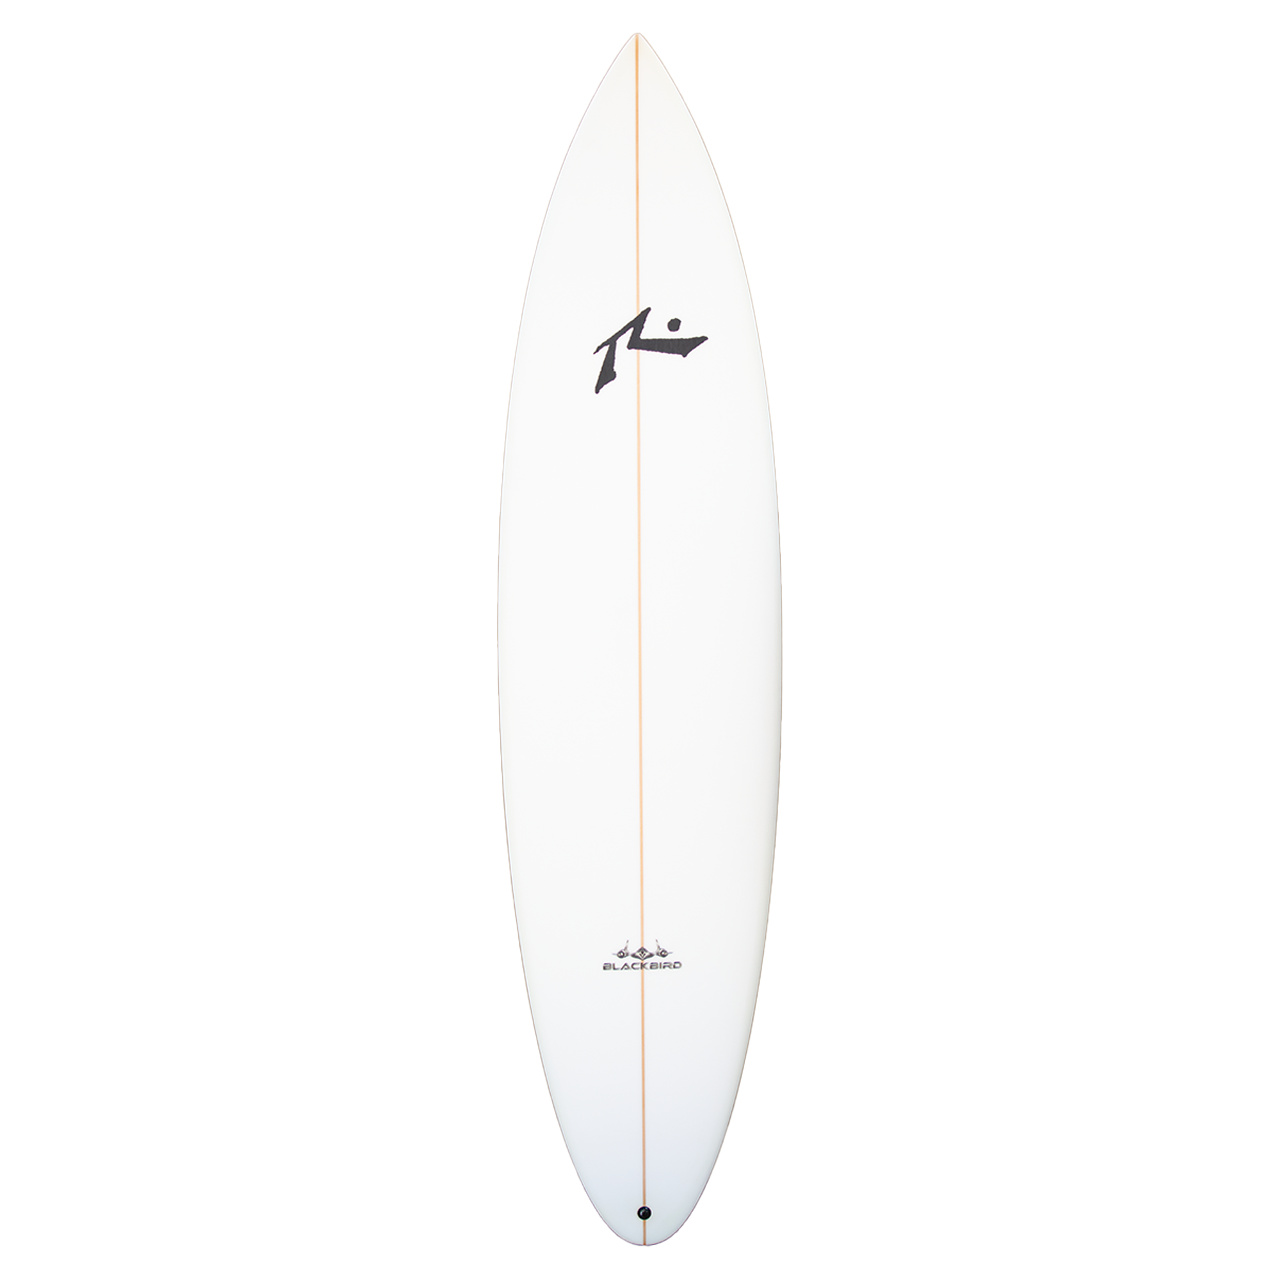 Blackbird Step Up - Deck View - Rusty Surfboards